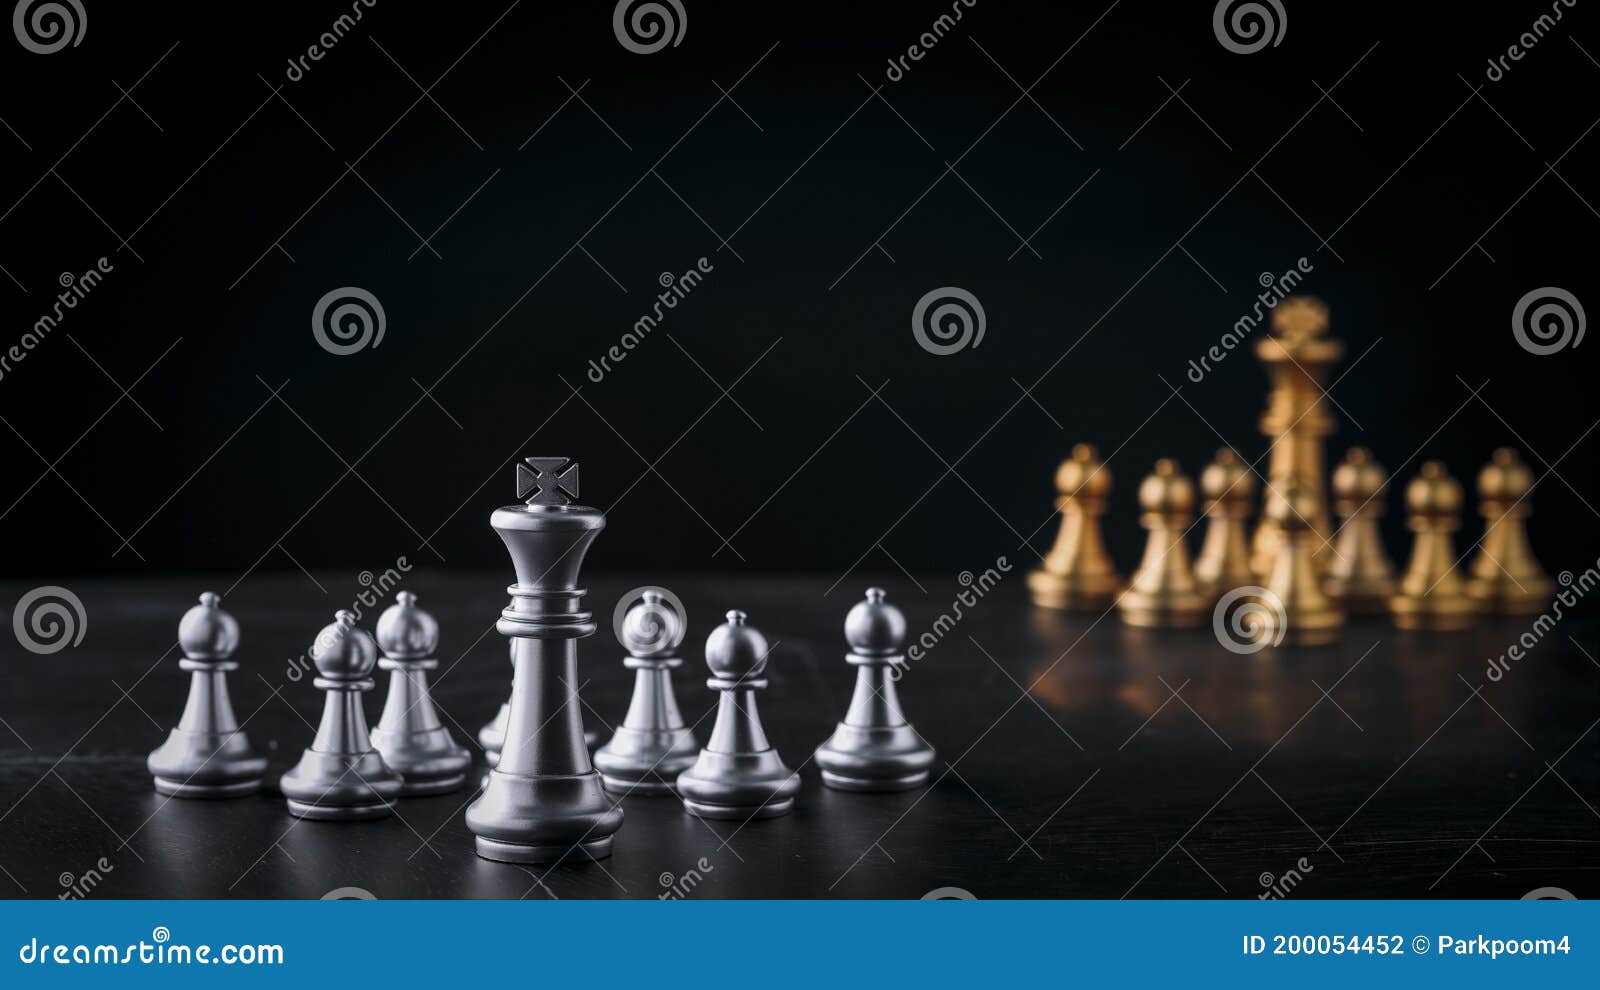 Tabuleiro de xadrez com tática de estratégia de negócios e